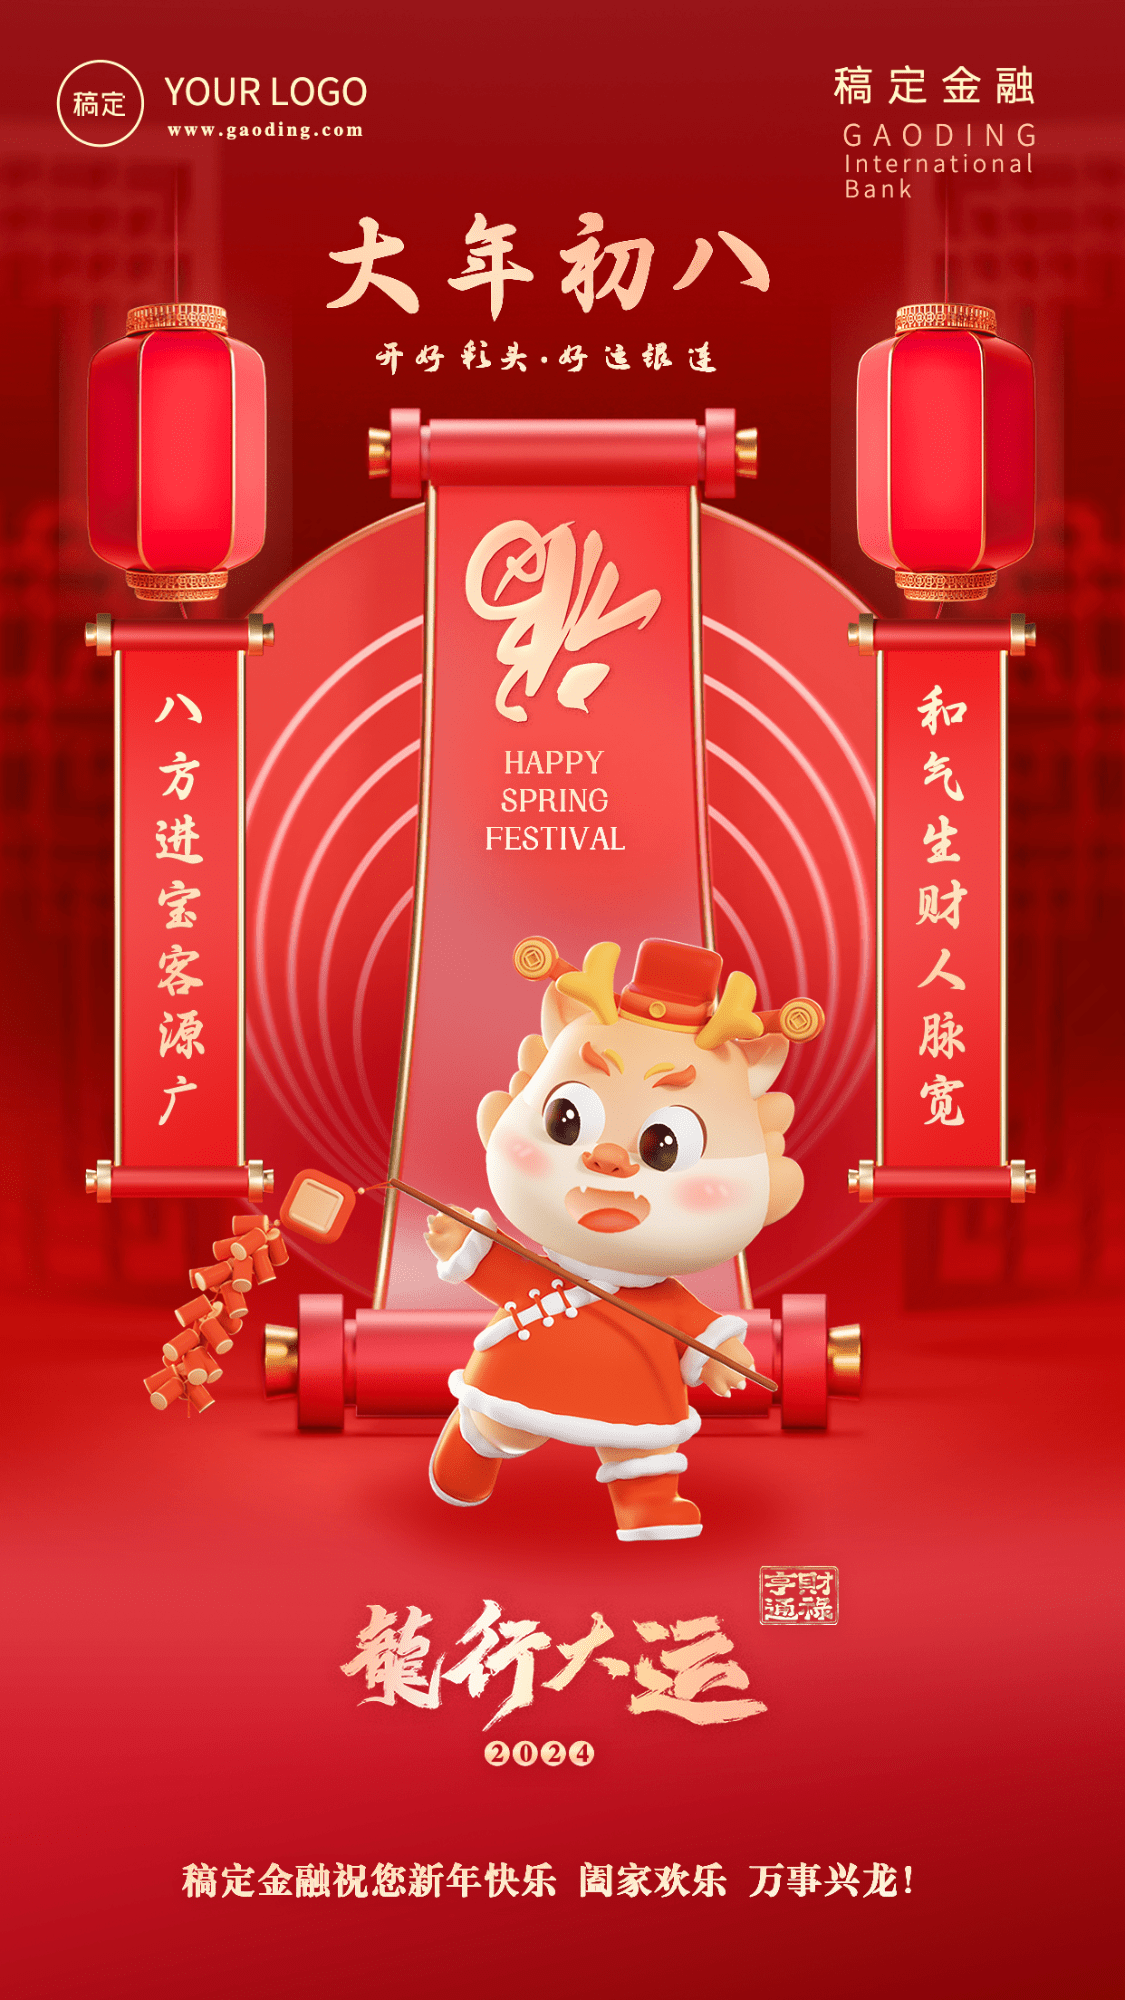 春节龙年正月初八金融保险节日祝福喜庆3D系列手机海报预览效果